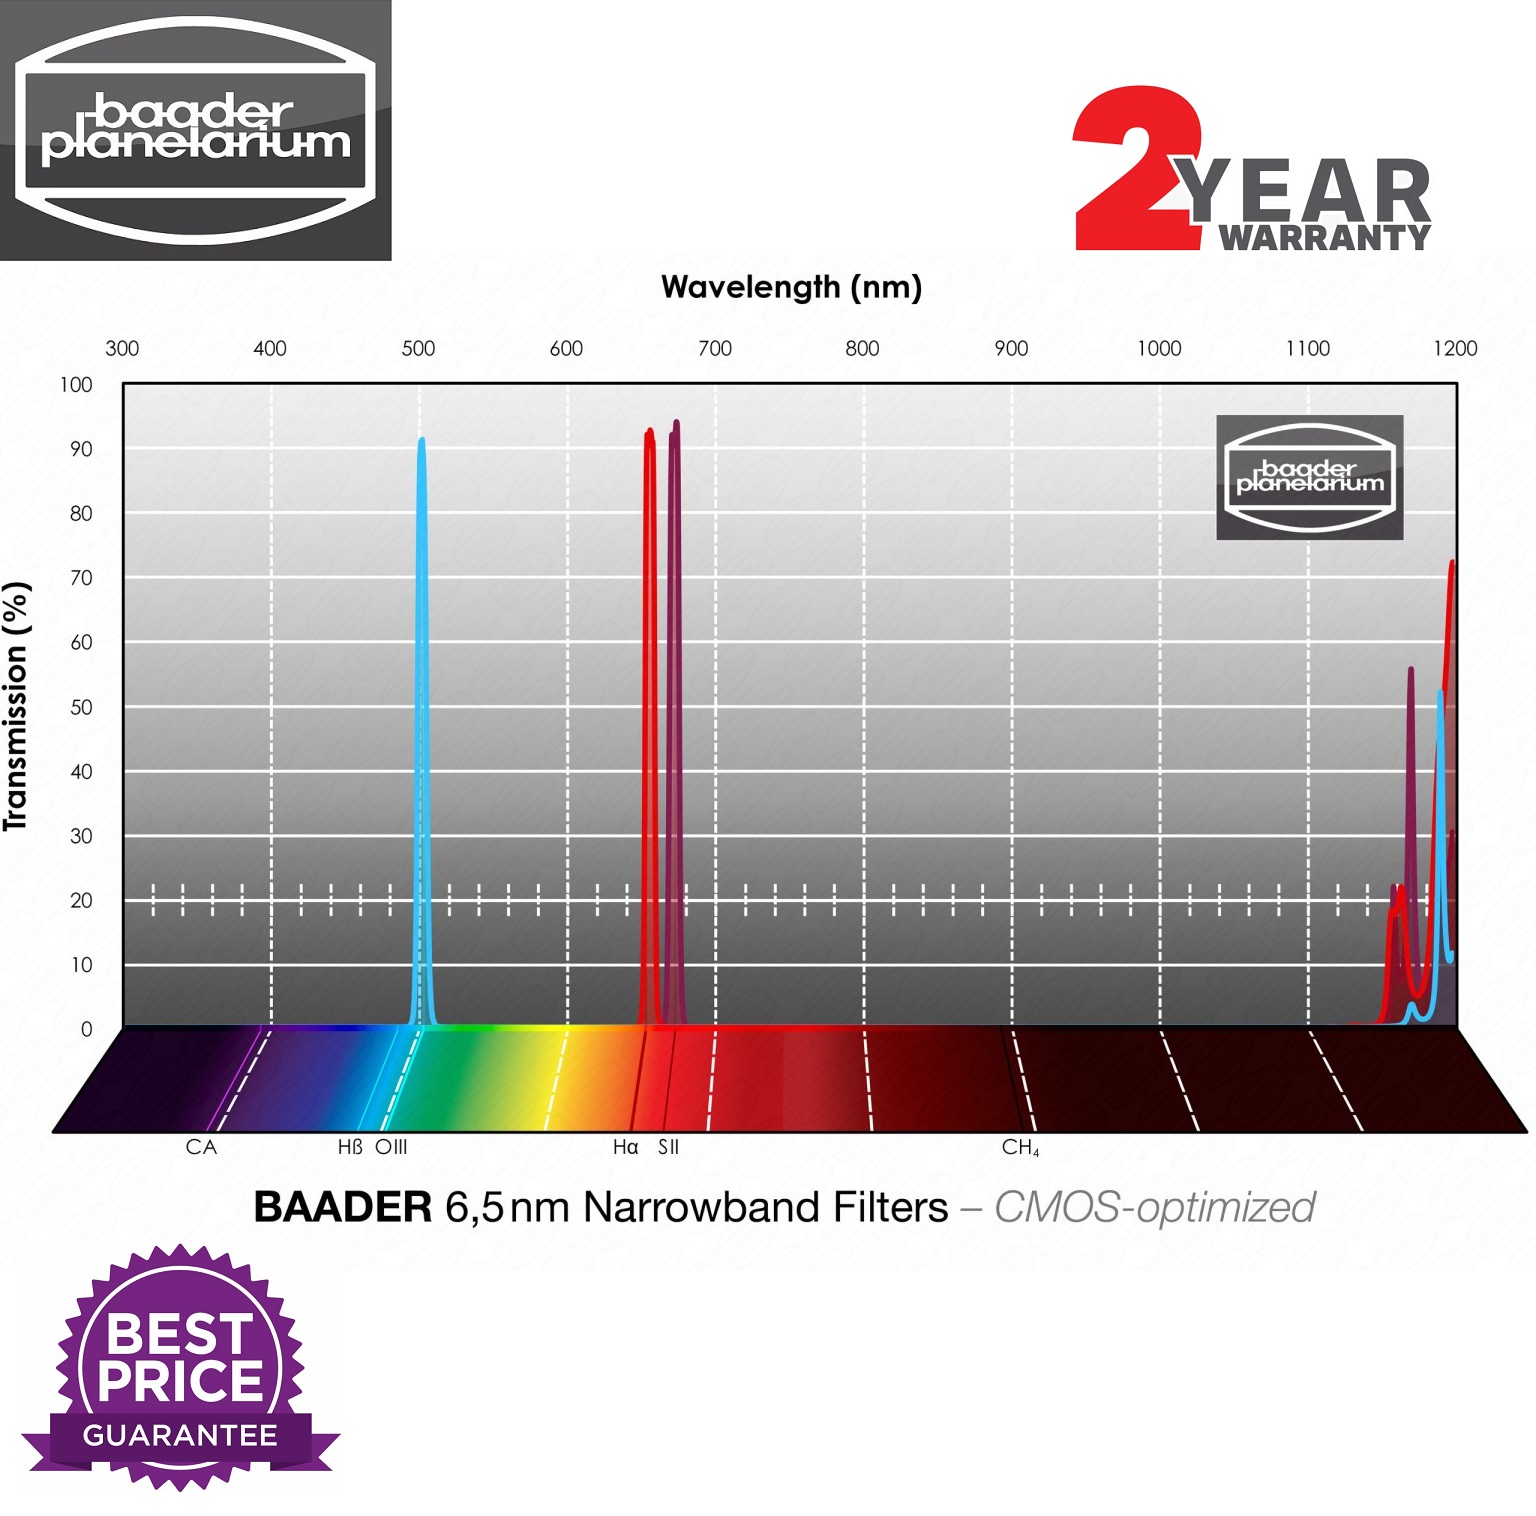 Baader 6.5nm Narrowband-Filter-Set 2